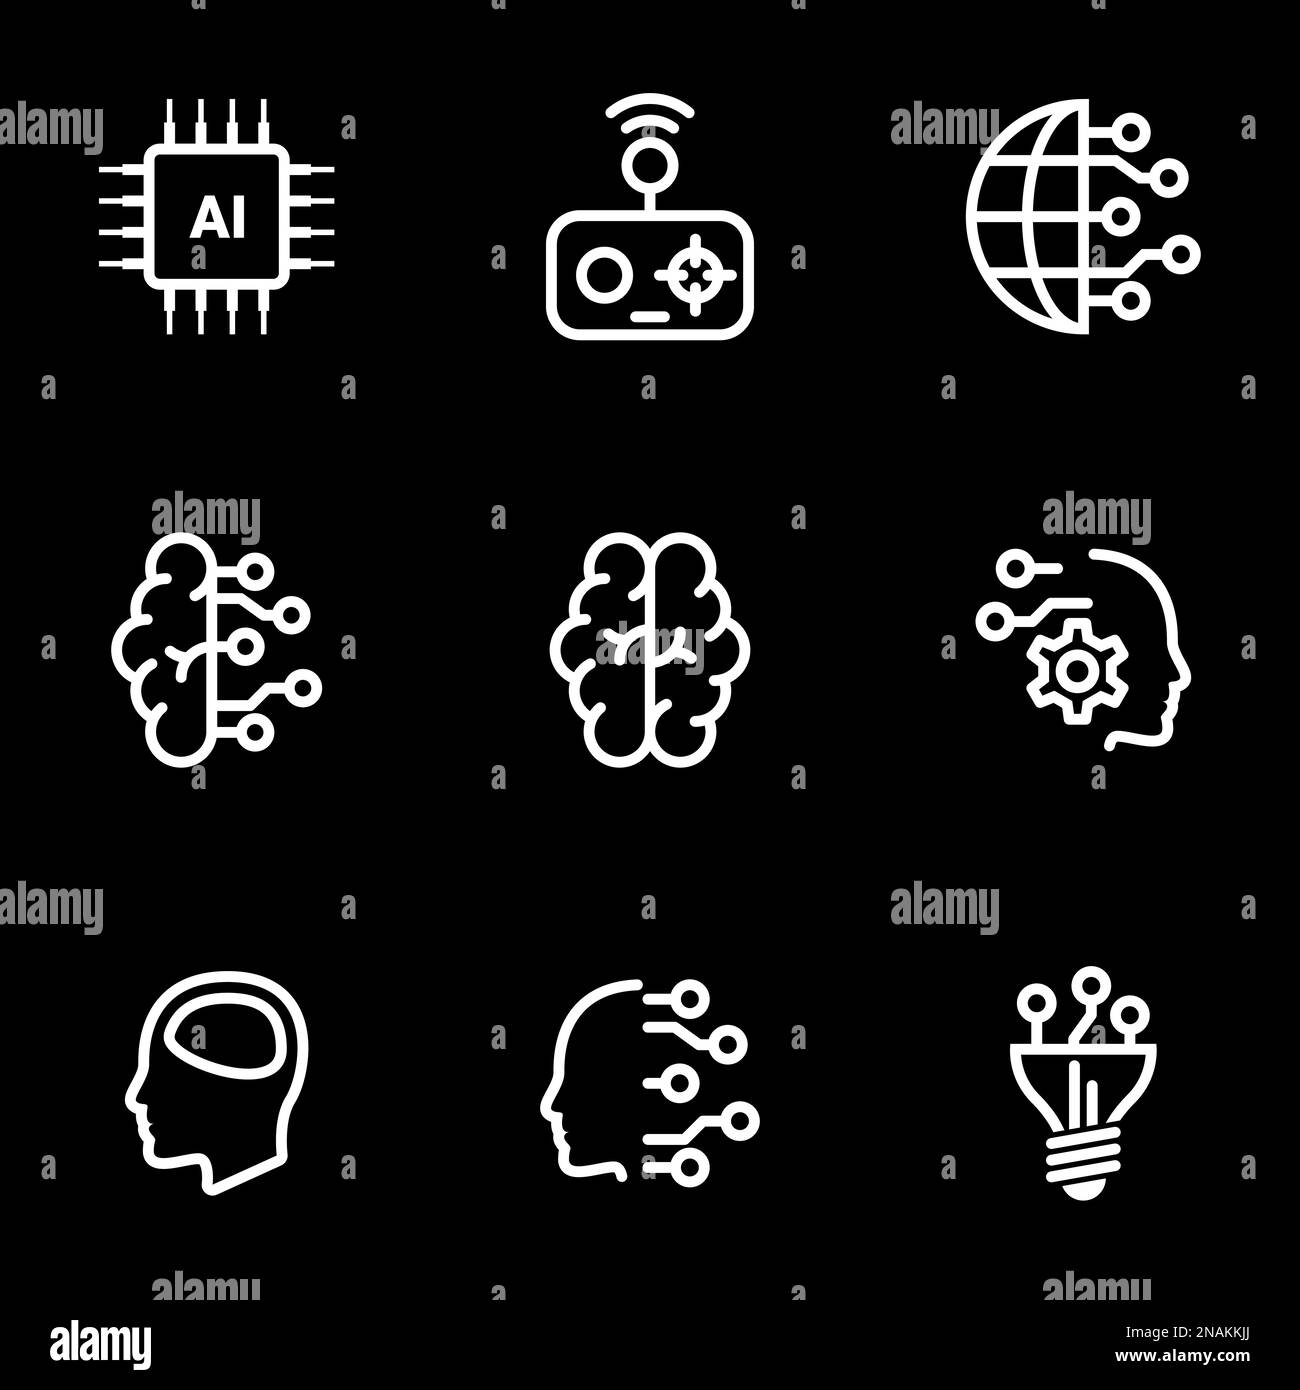 Ensemble d'icônes simples sur un thème intellect artificiel, esprit, technologie, vecteur, ensemble. Arrière-plan noir Illustration de Vecteur